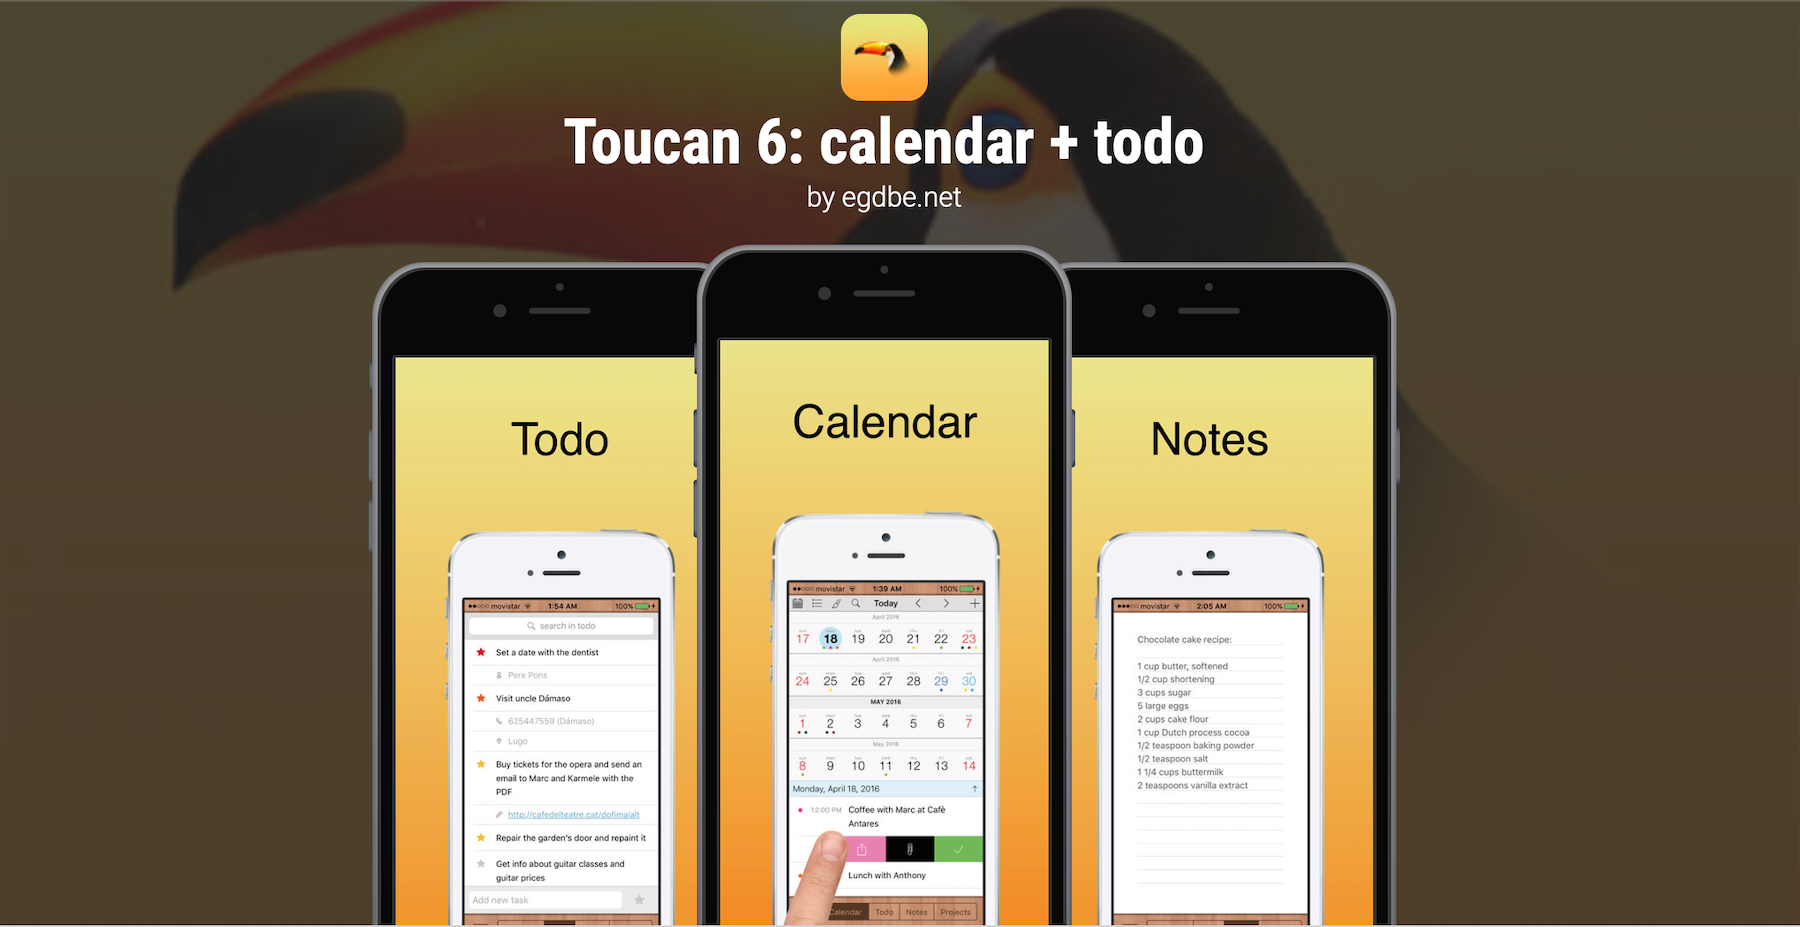 Program na dziś: Toucan 6 calendar + todo